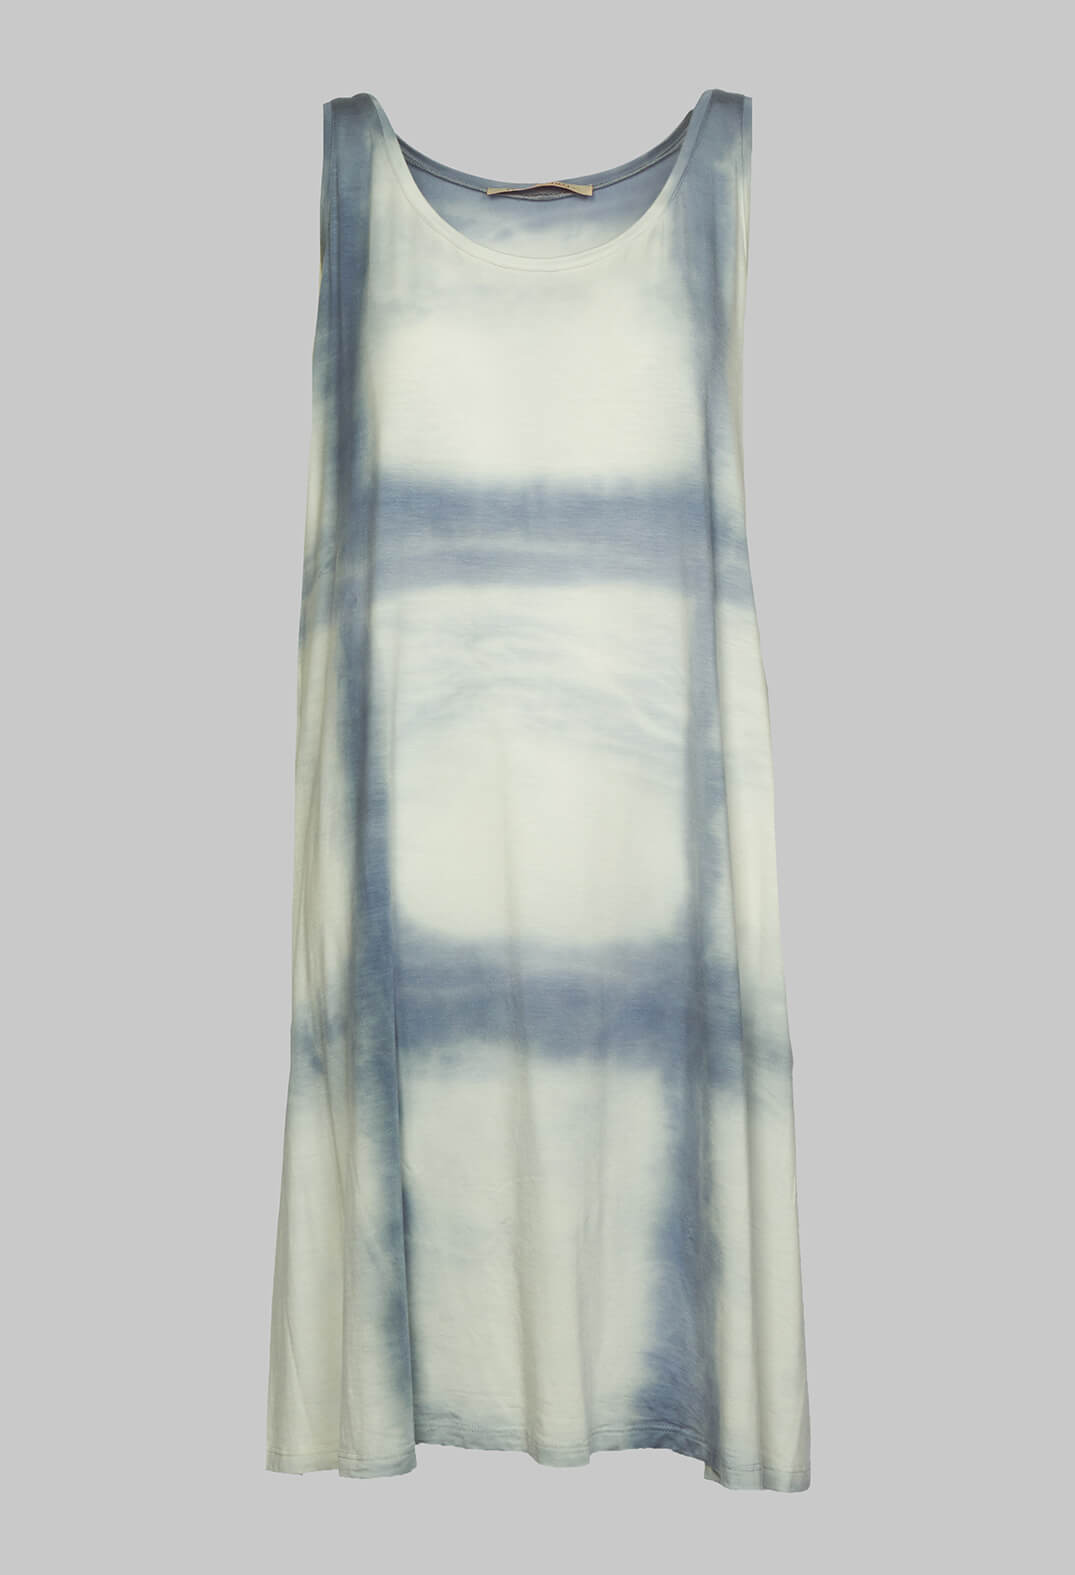 Rubelsummen Dress in Wind Blue